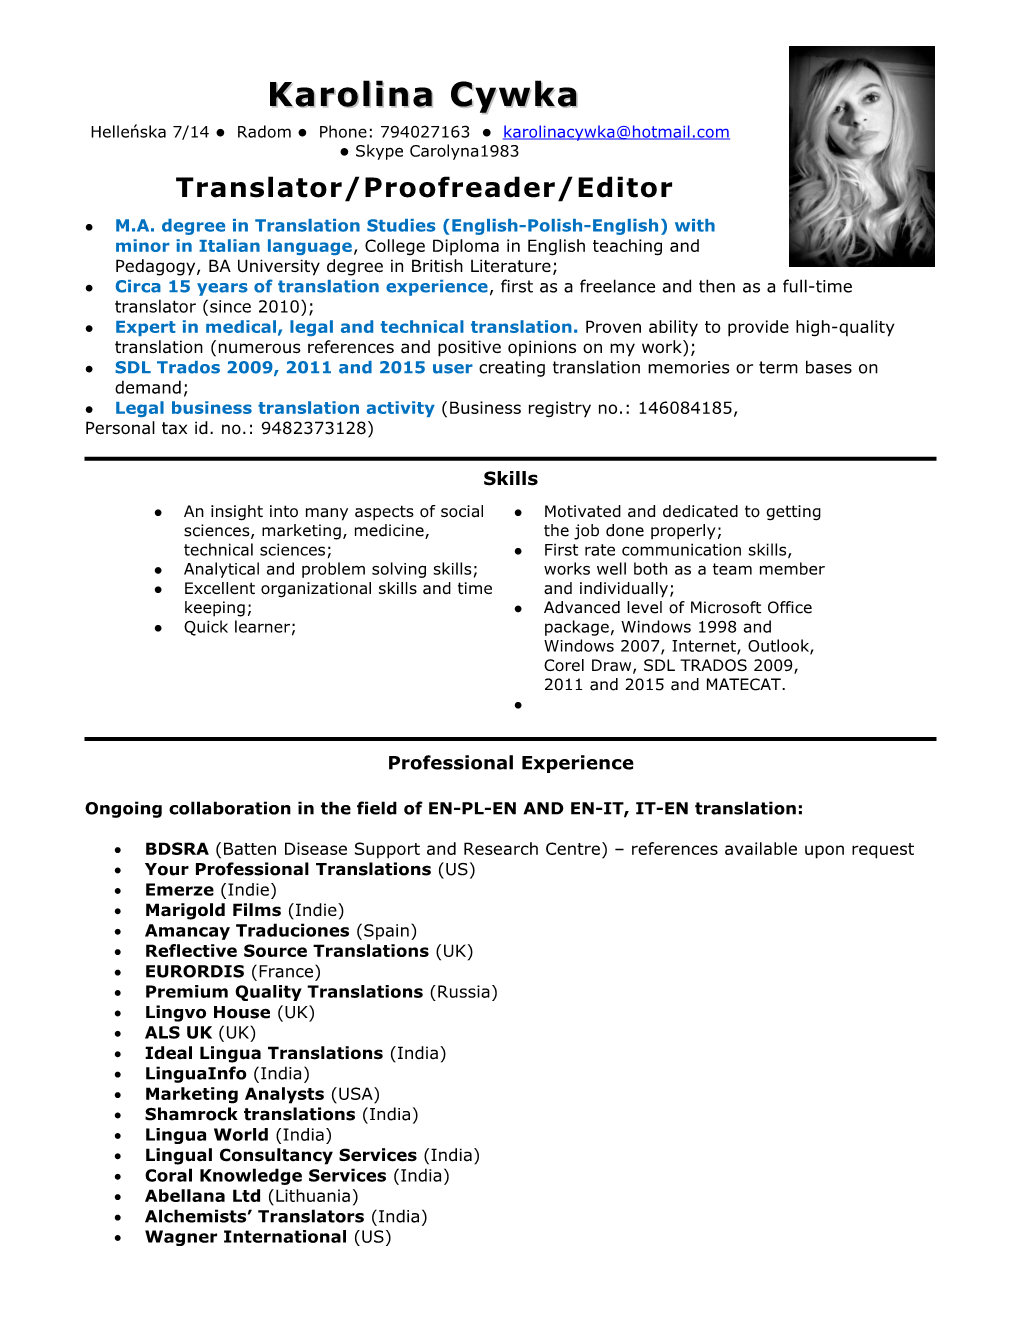 Translator/Proofreader/Editor